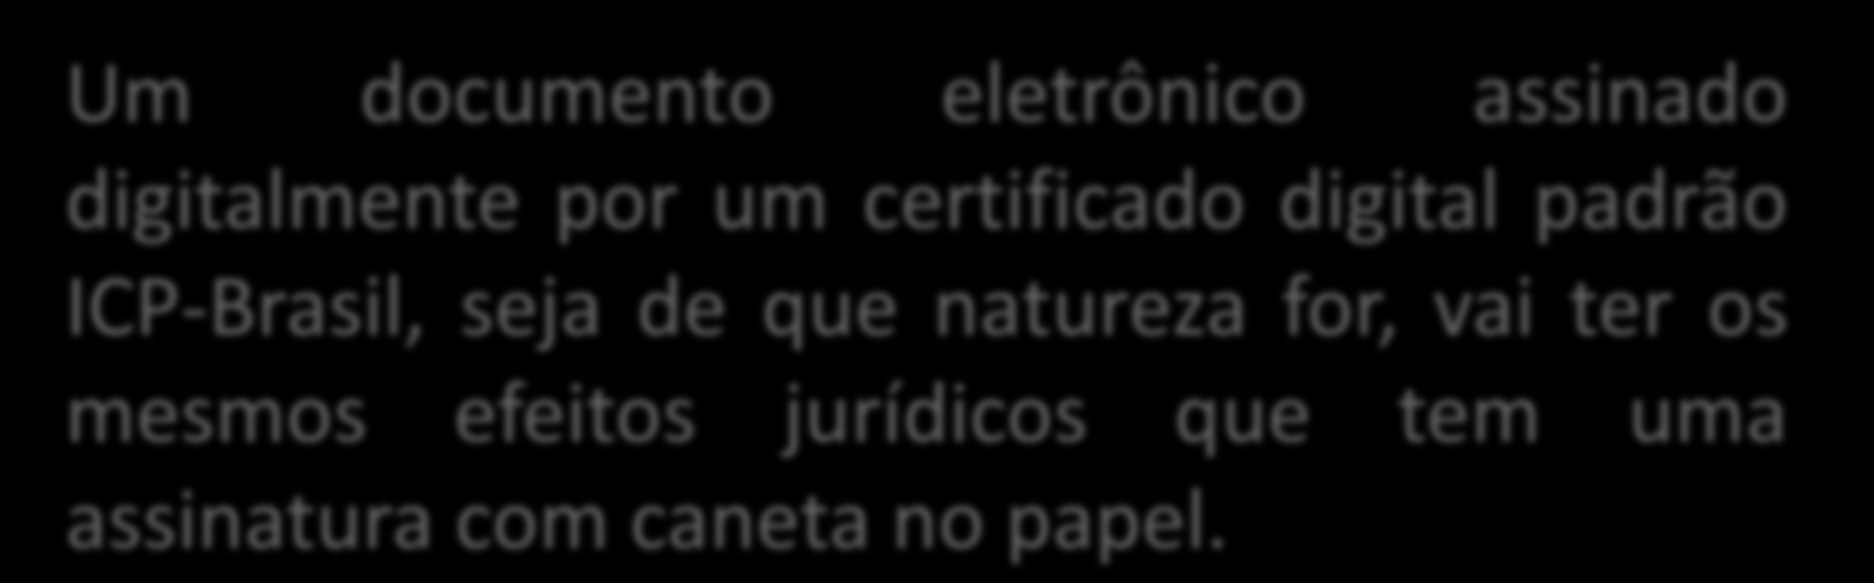 Um documento eletrônico assinado digitalmente por um certificado digital padrão ICP-Brasil, seja